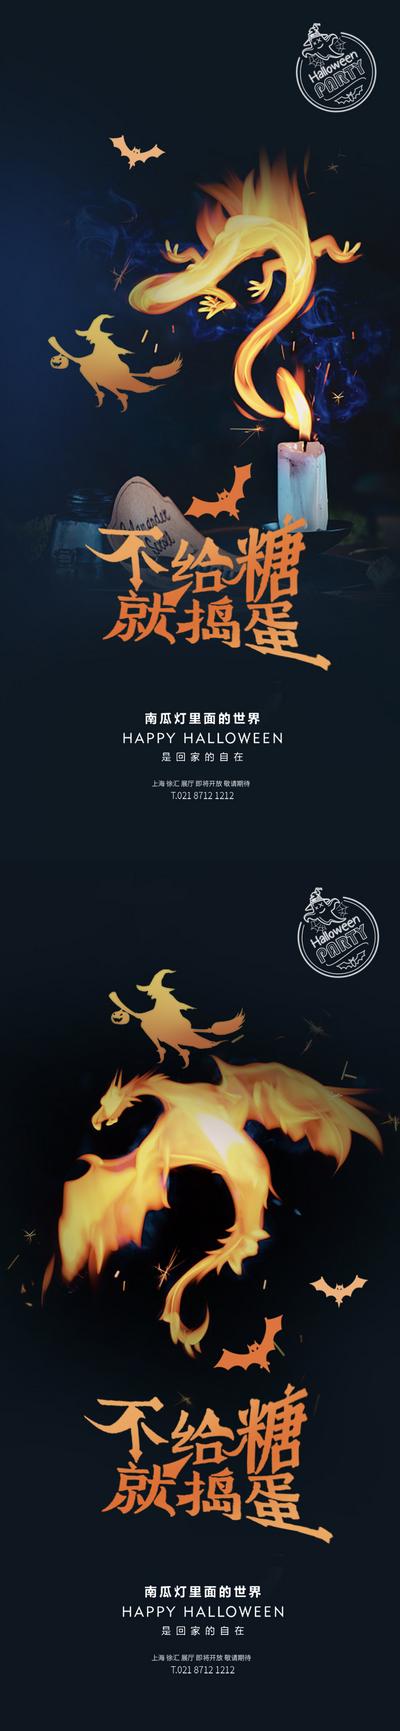 南门网 海报 房地产 公历节日 万圣节 火龙 蝙蝠 巫师 创意